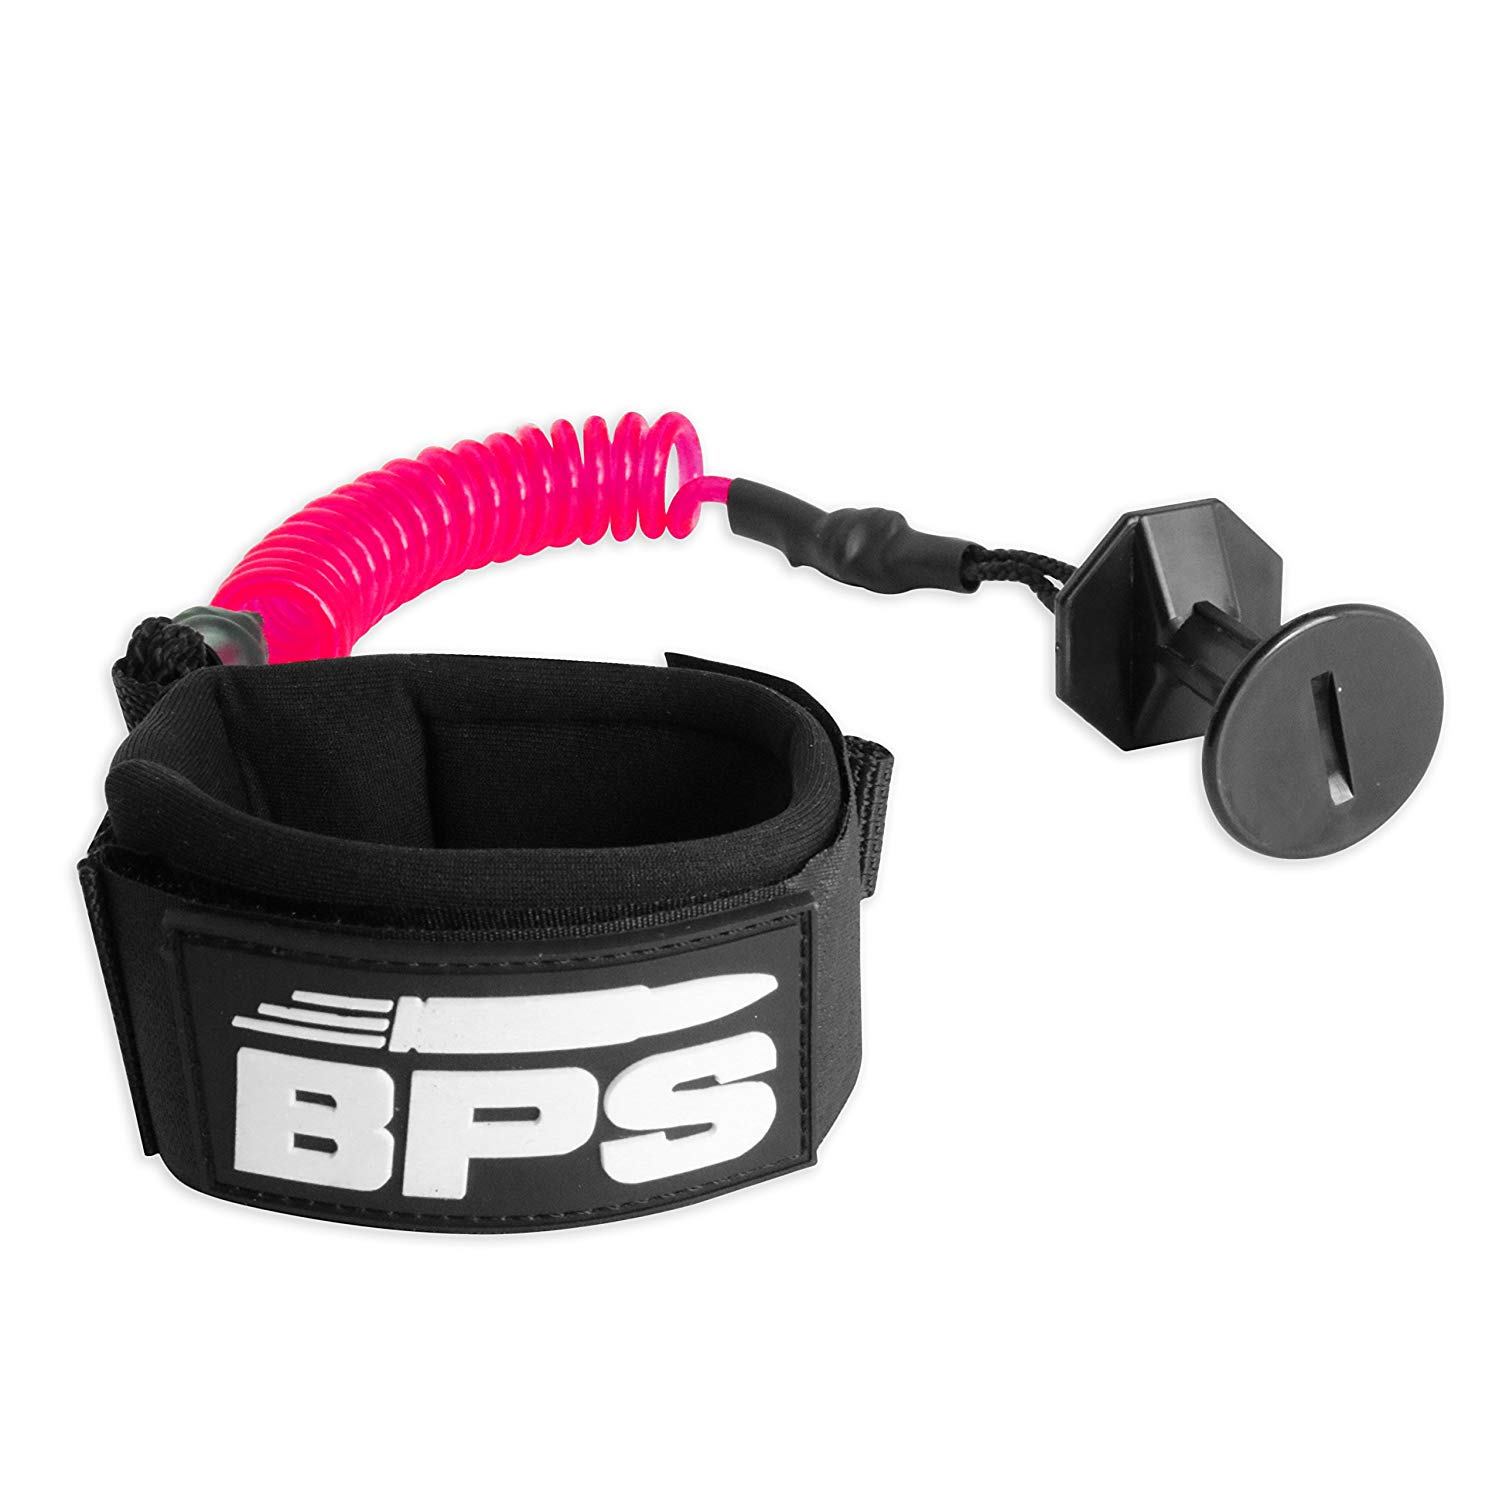 a pink bodyboard leash